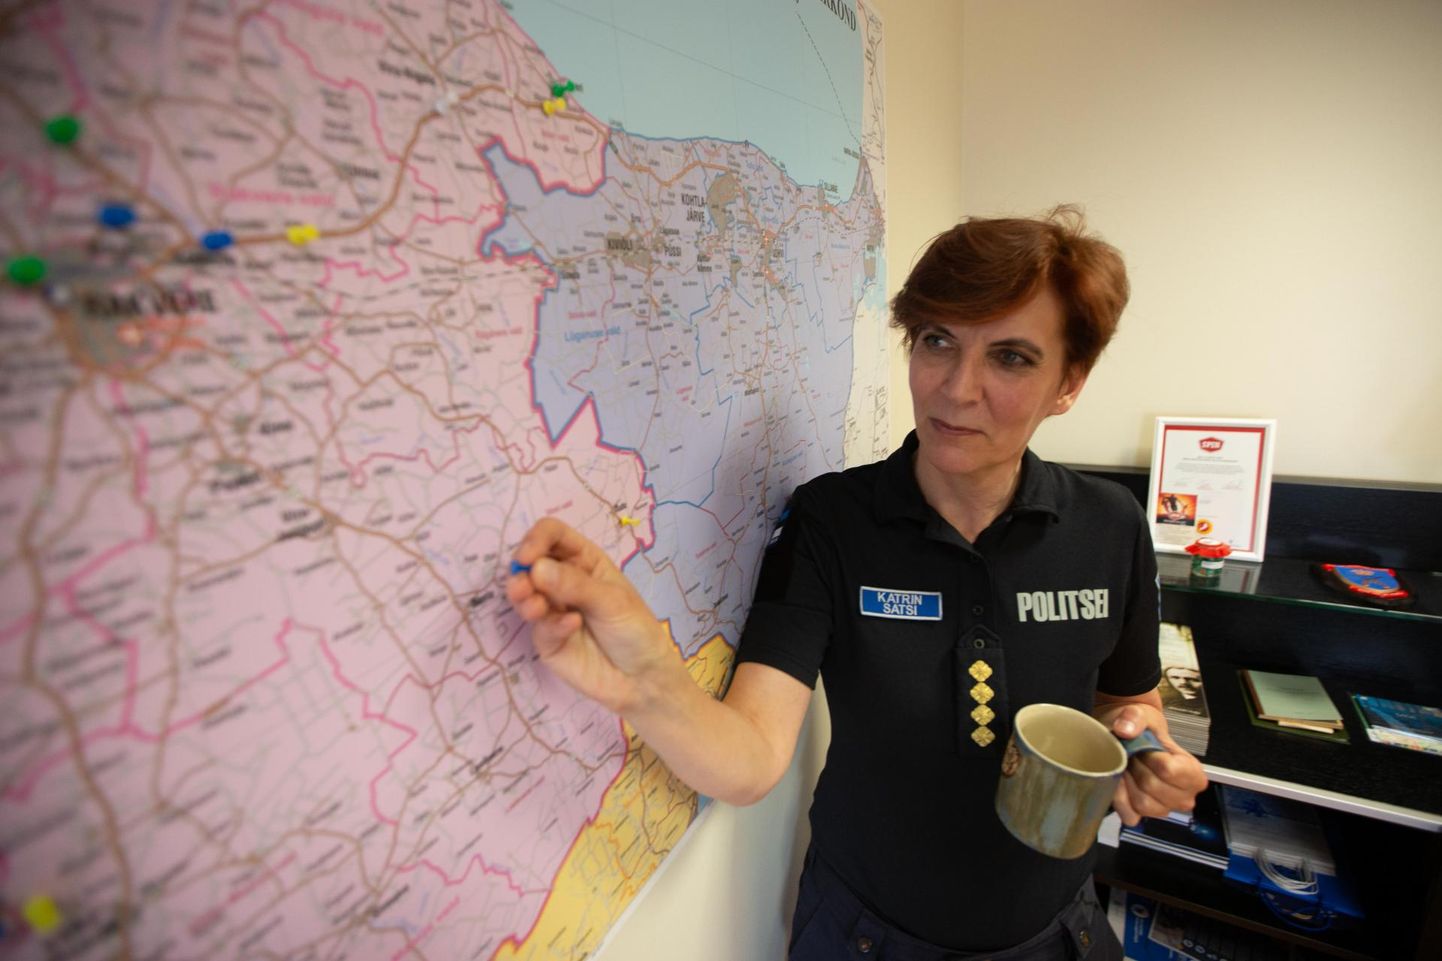 Rakvere politseijaoskonna juht Katrin Satsi.